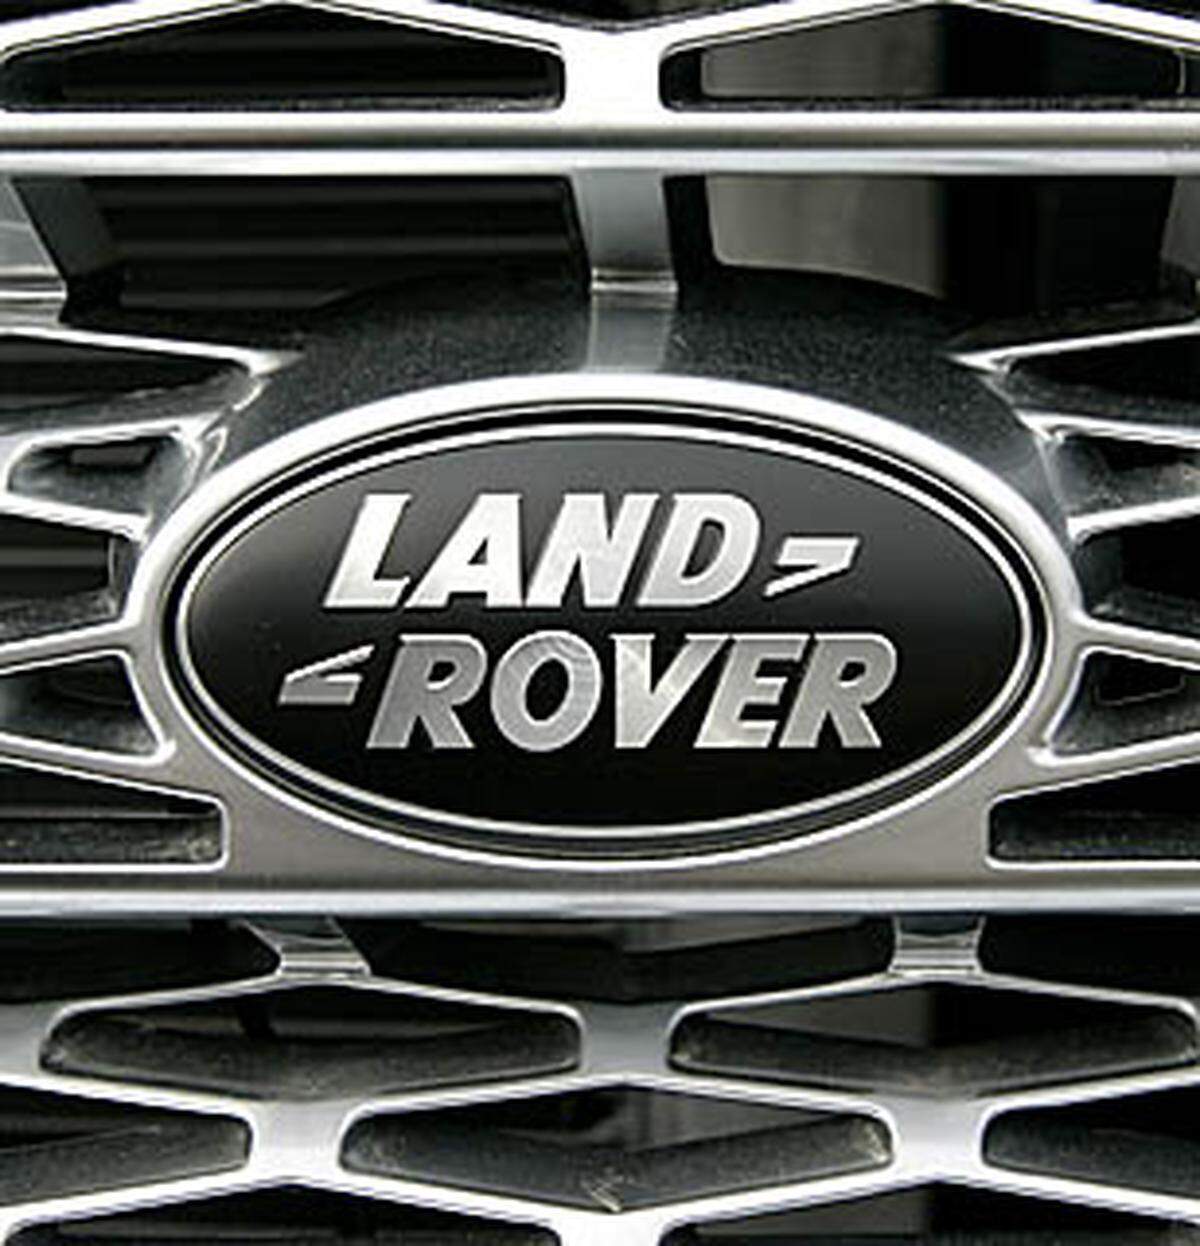 Die Geländewagen von Land Rover sind ebenfalls sehr wertbeständig. Sie liegen hinter dem Sieger auf Platz 2 mit 47,45 Prozent Wertverlust.